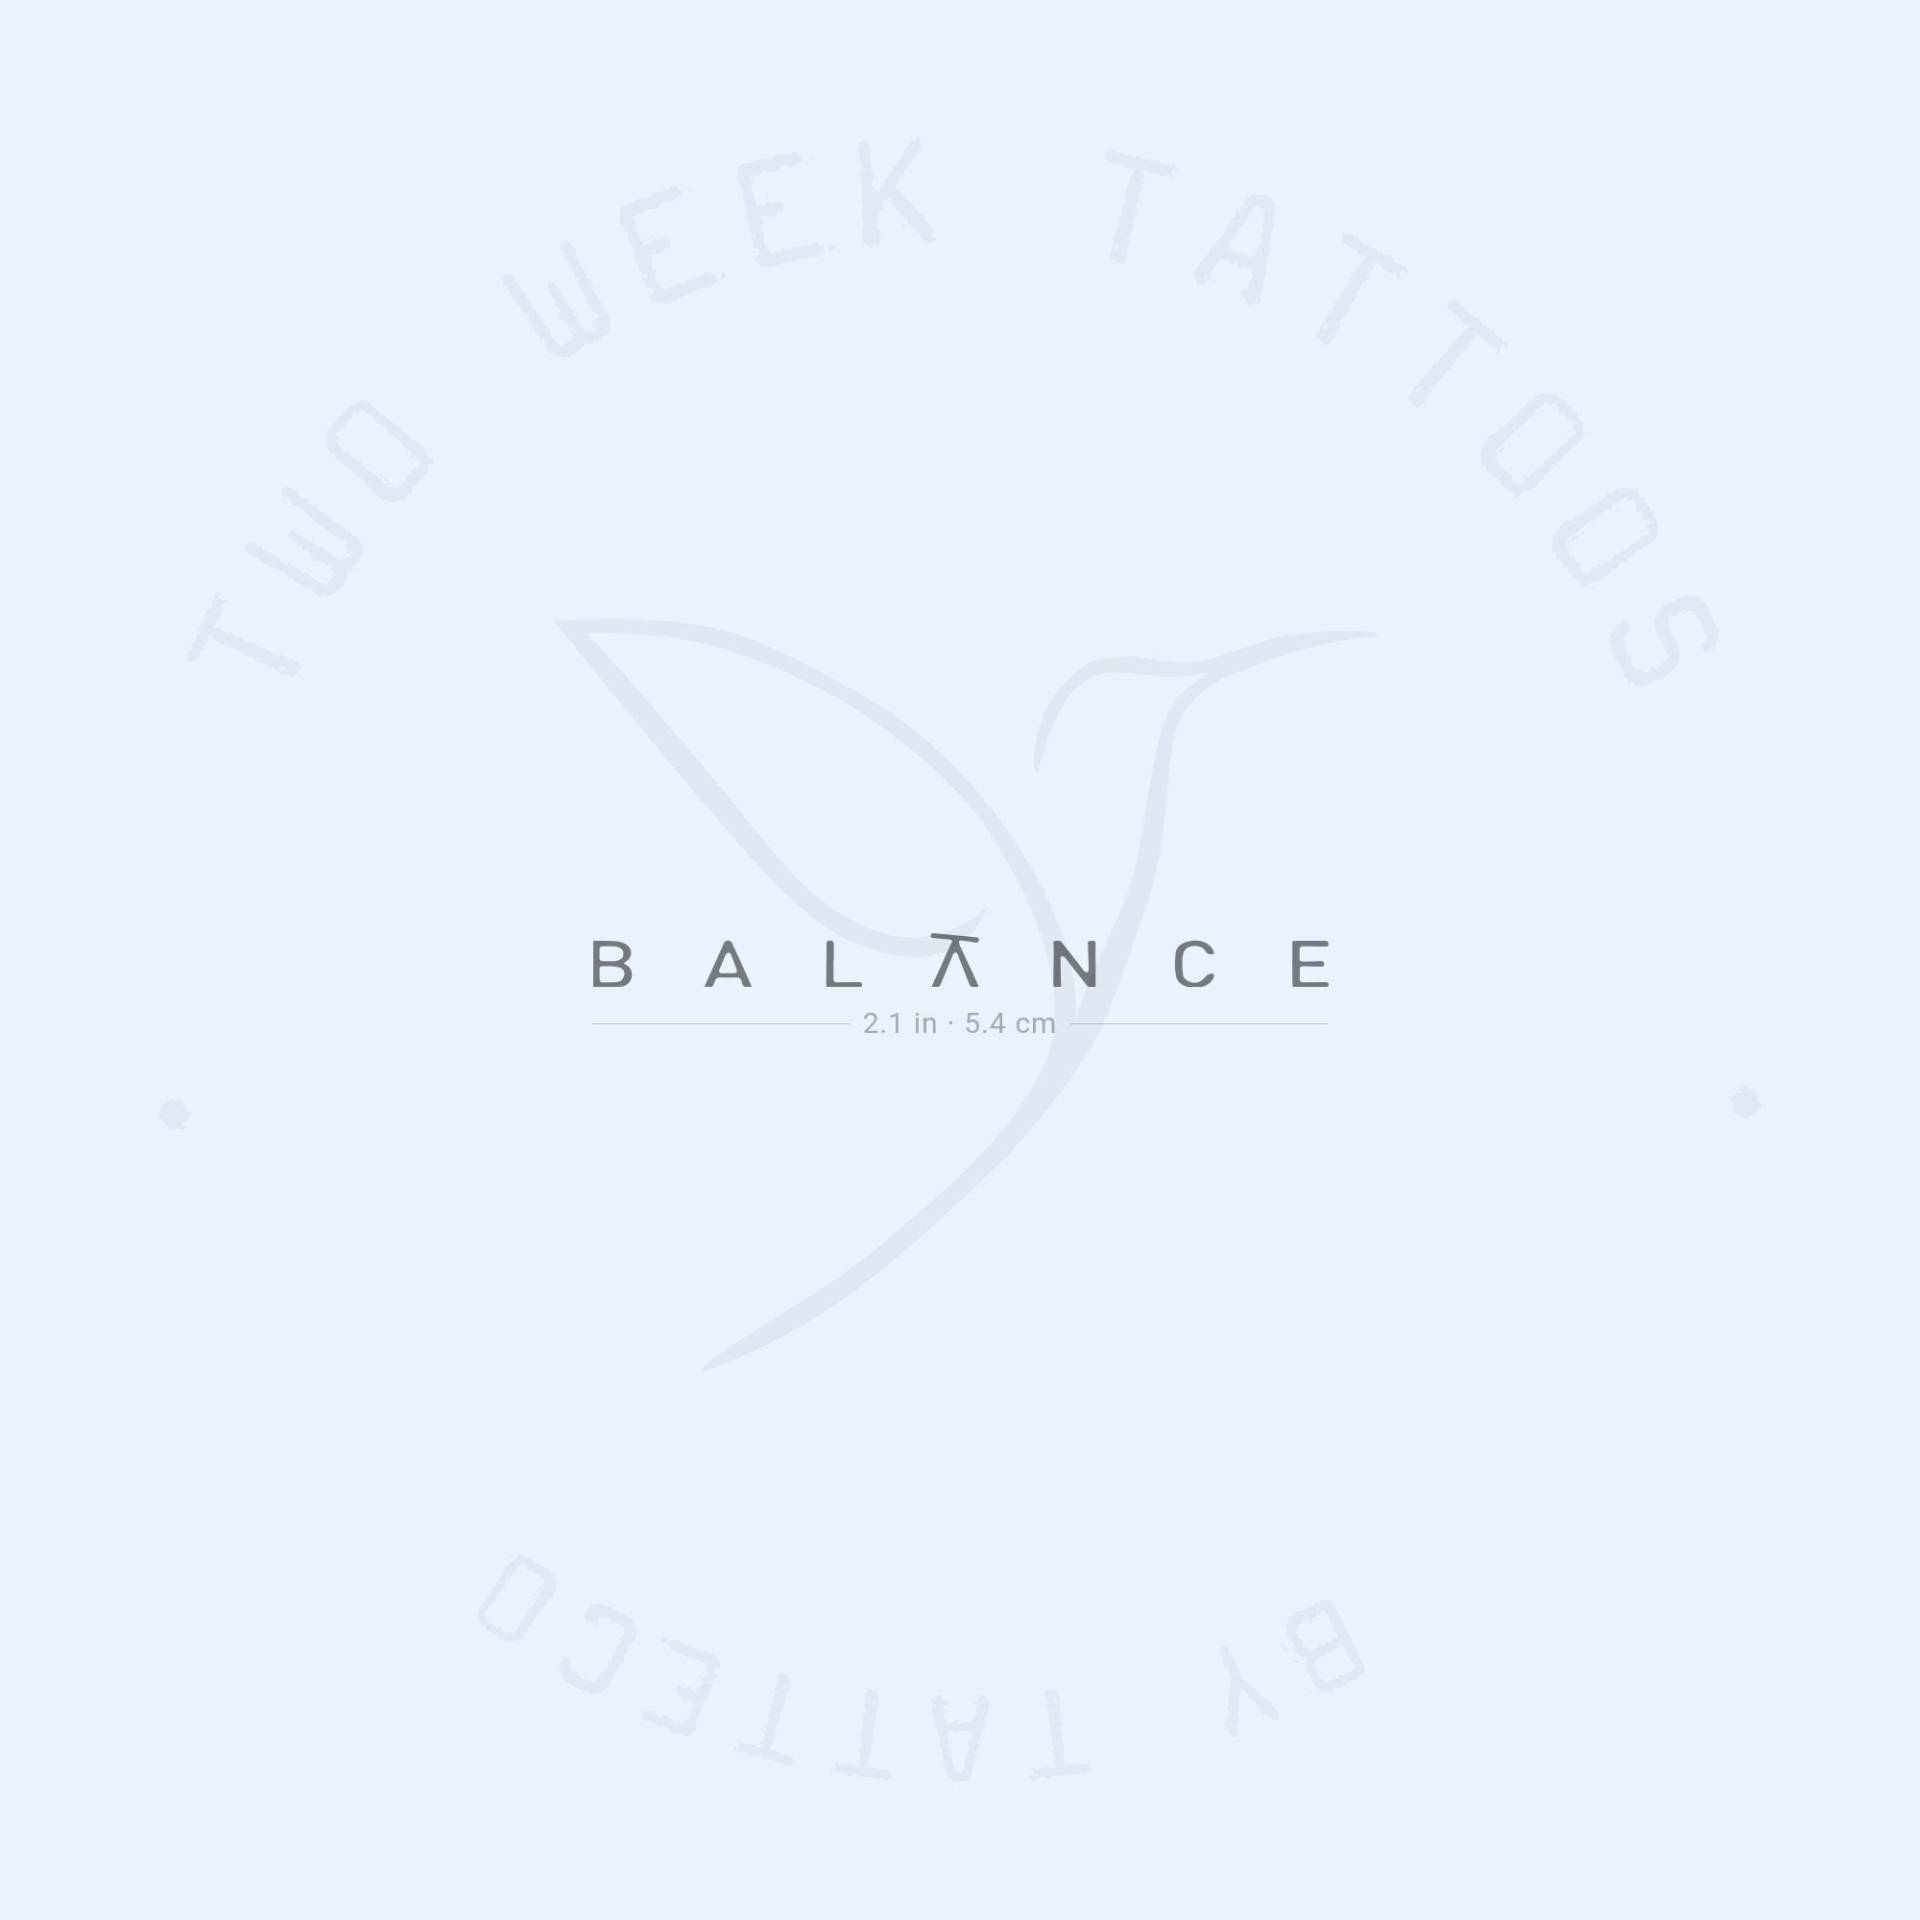 Balance Semi-Permanent 2-Wochen Tattoo | 2Er Set von Etsy - twoweektattoos